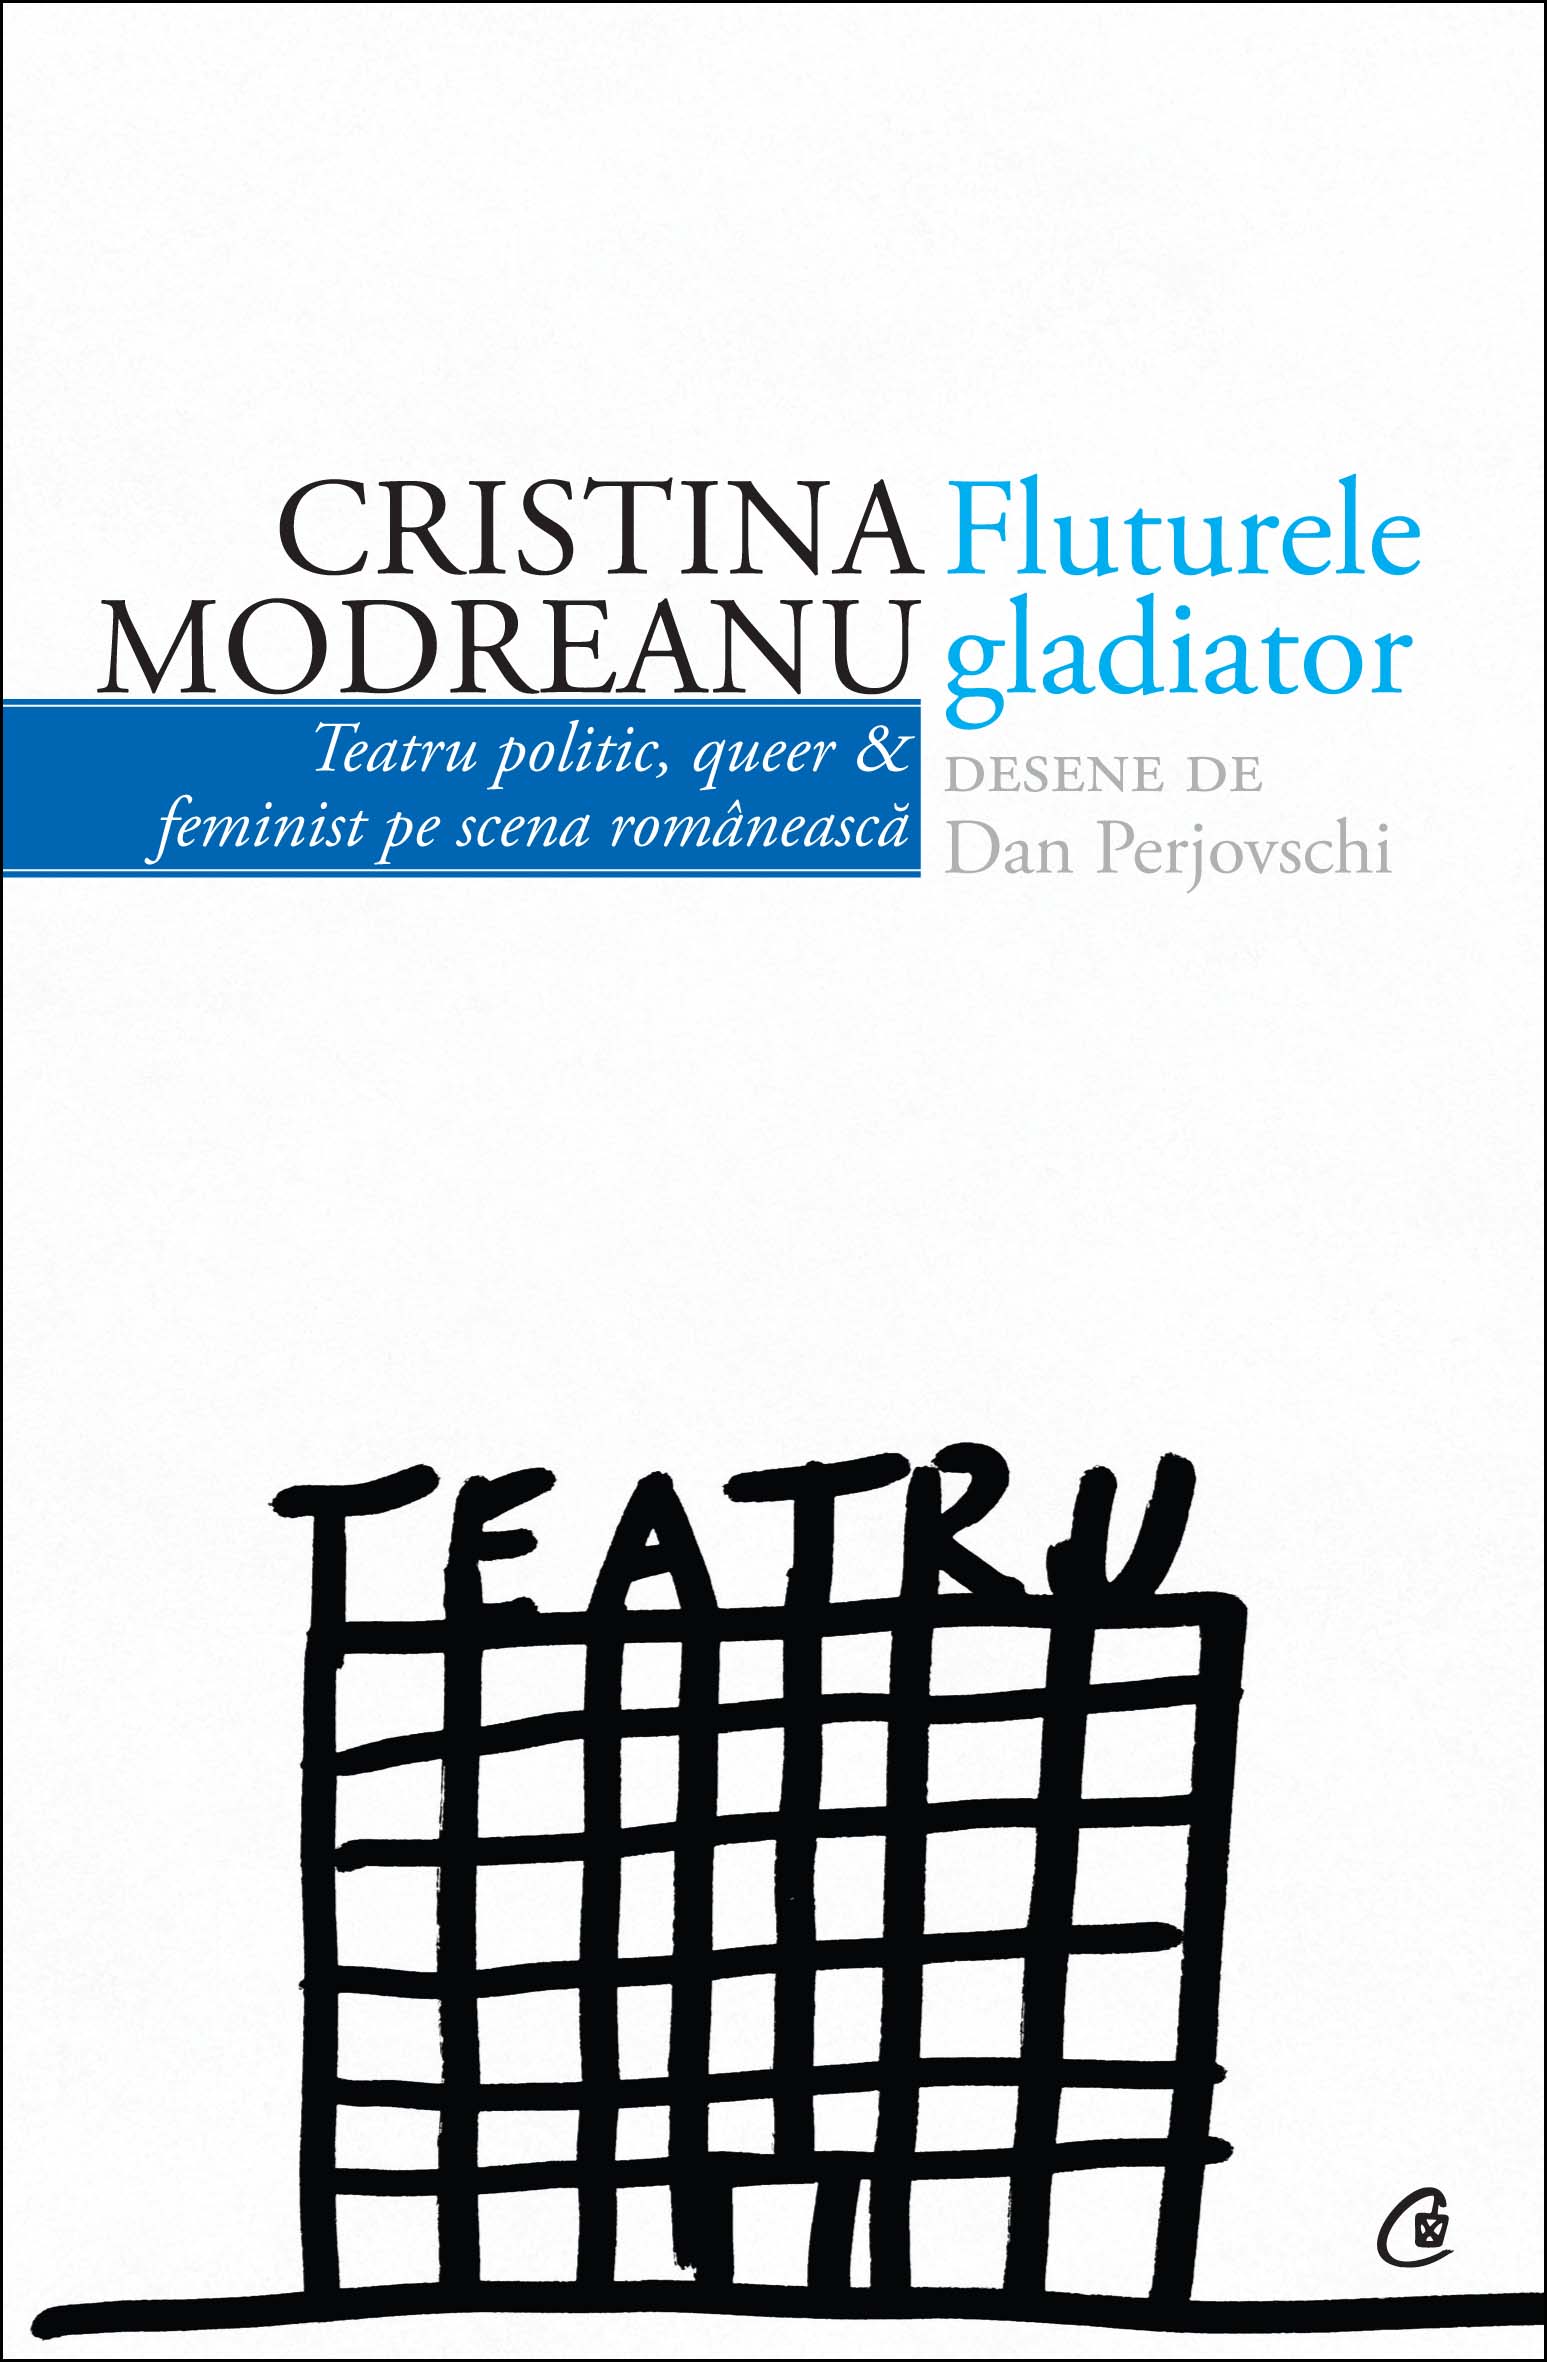 Fluturele Gladiator - Cristina Modreanu